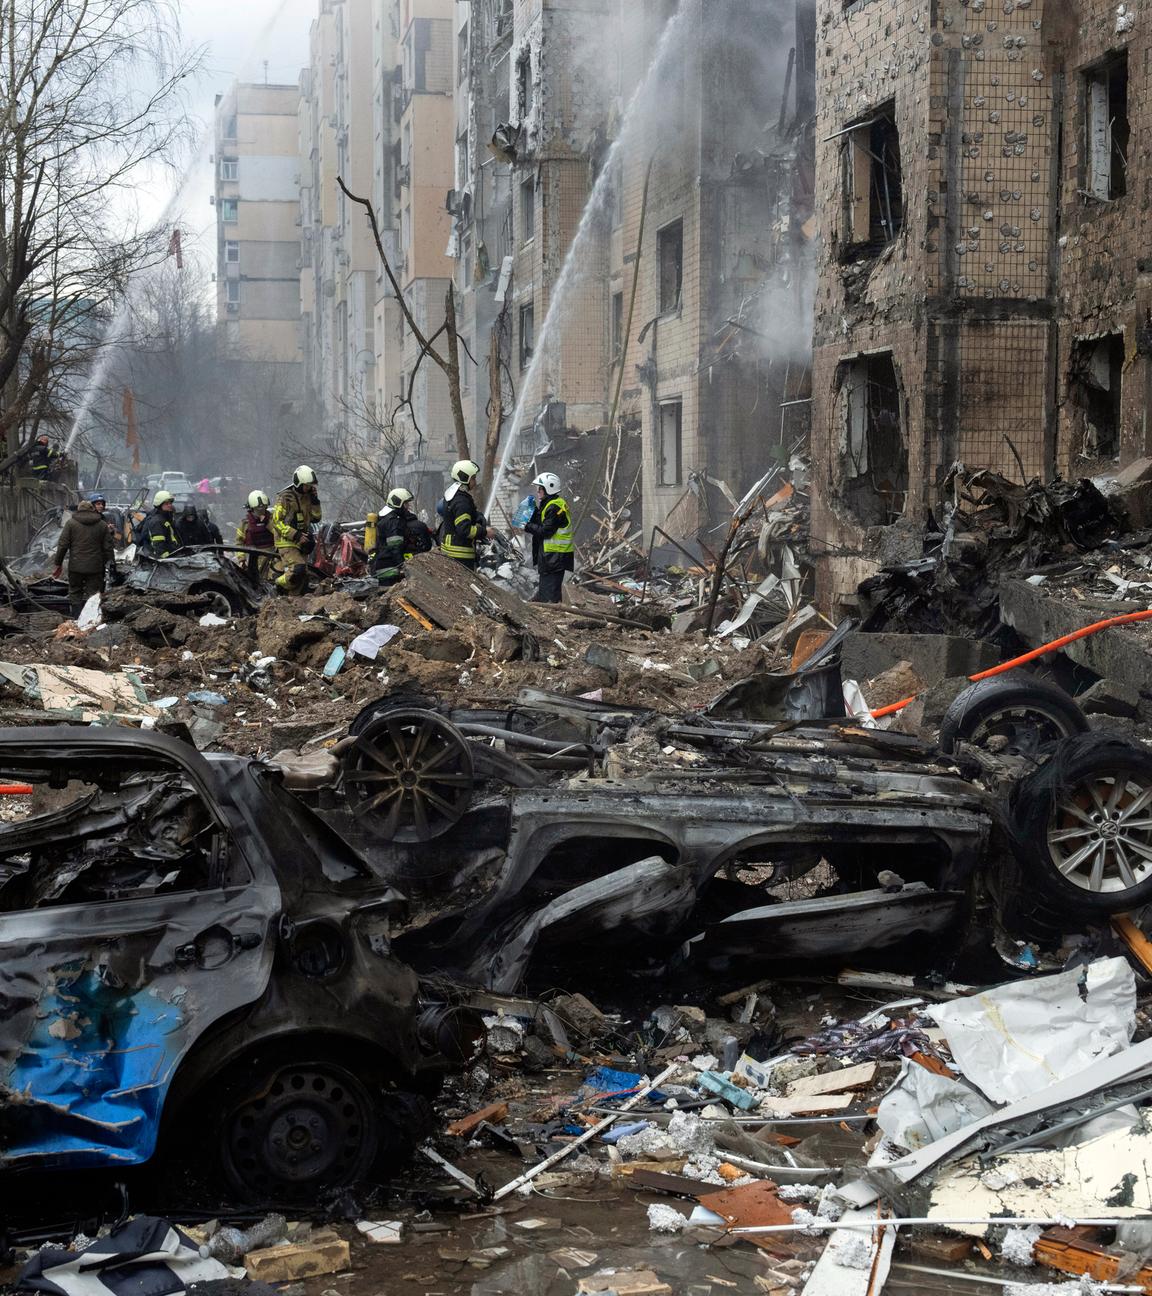  Ukraine, Kiew: Feuerwehrleute arbeiten daran, ein Feuer in einem zerstörten Wohnhaus nach einem russischen Raketenangriff zu löschen.